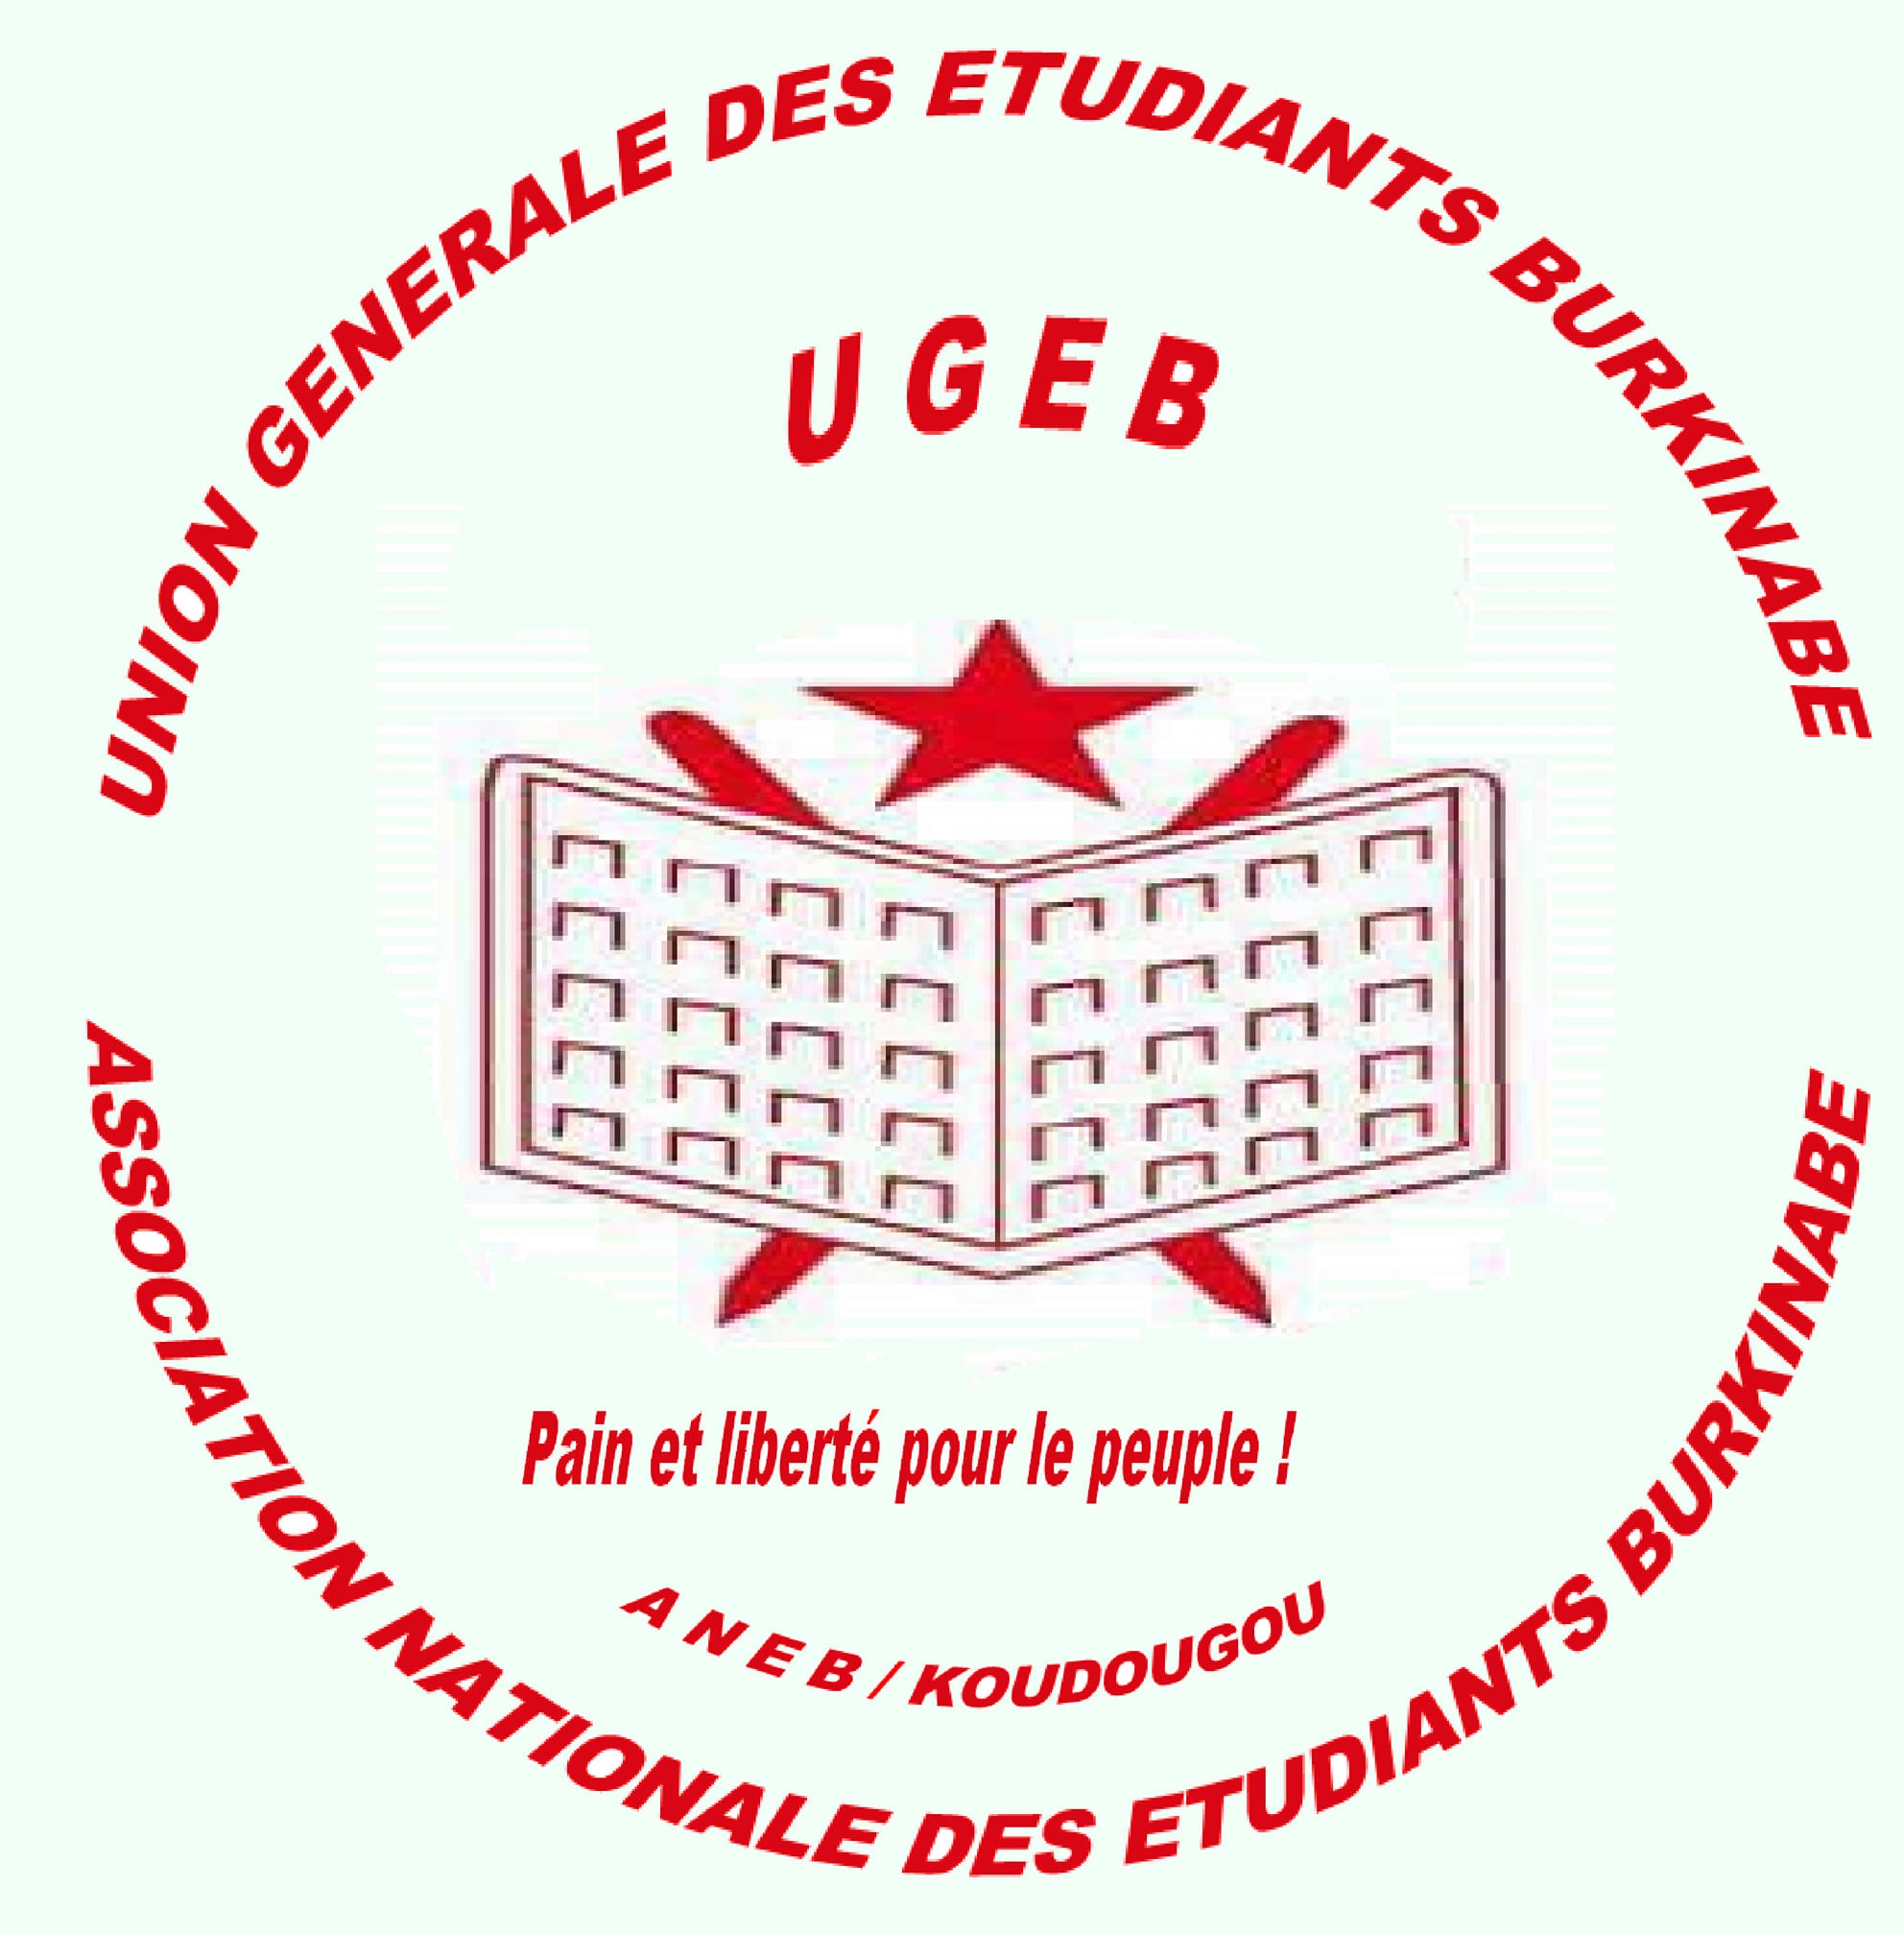 Décès d’un étudiant au restaurant universitaire de Koudougou : Le comité exécutif de l’UGEB et de l’ANEB exige l’ouverture d’une enquête